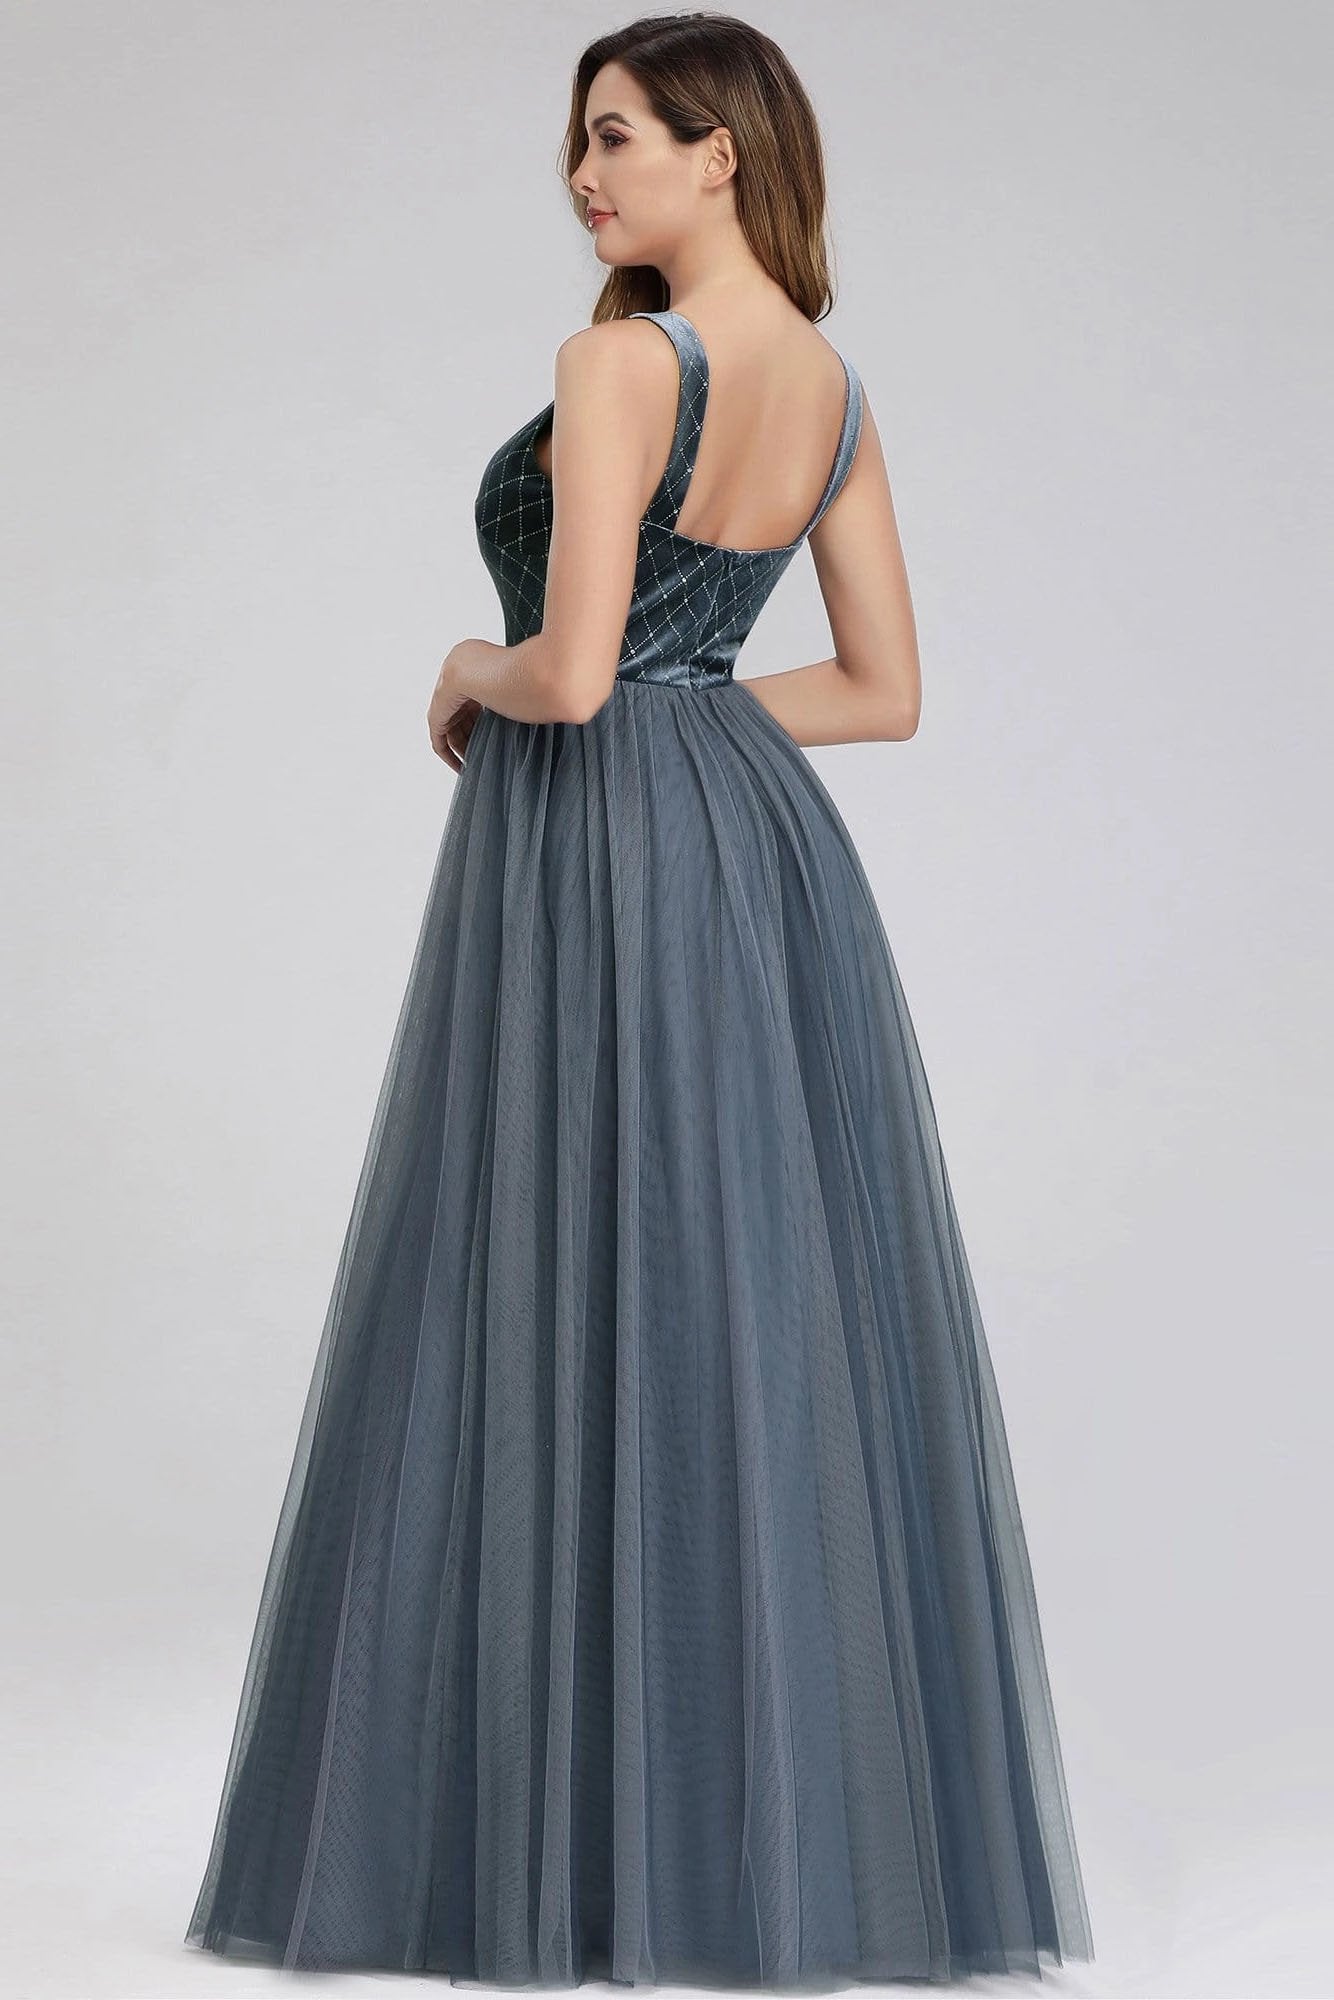 A-Line V-Neck Sleeveless Blue Floor-length Evening Dress Cheap Prom Dresses STC15055